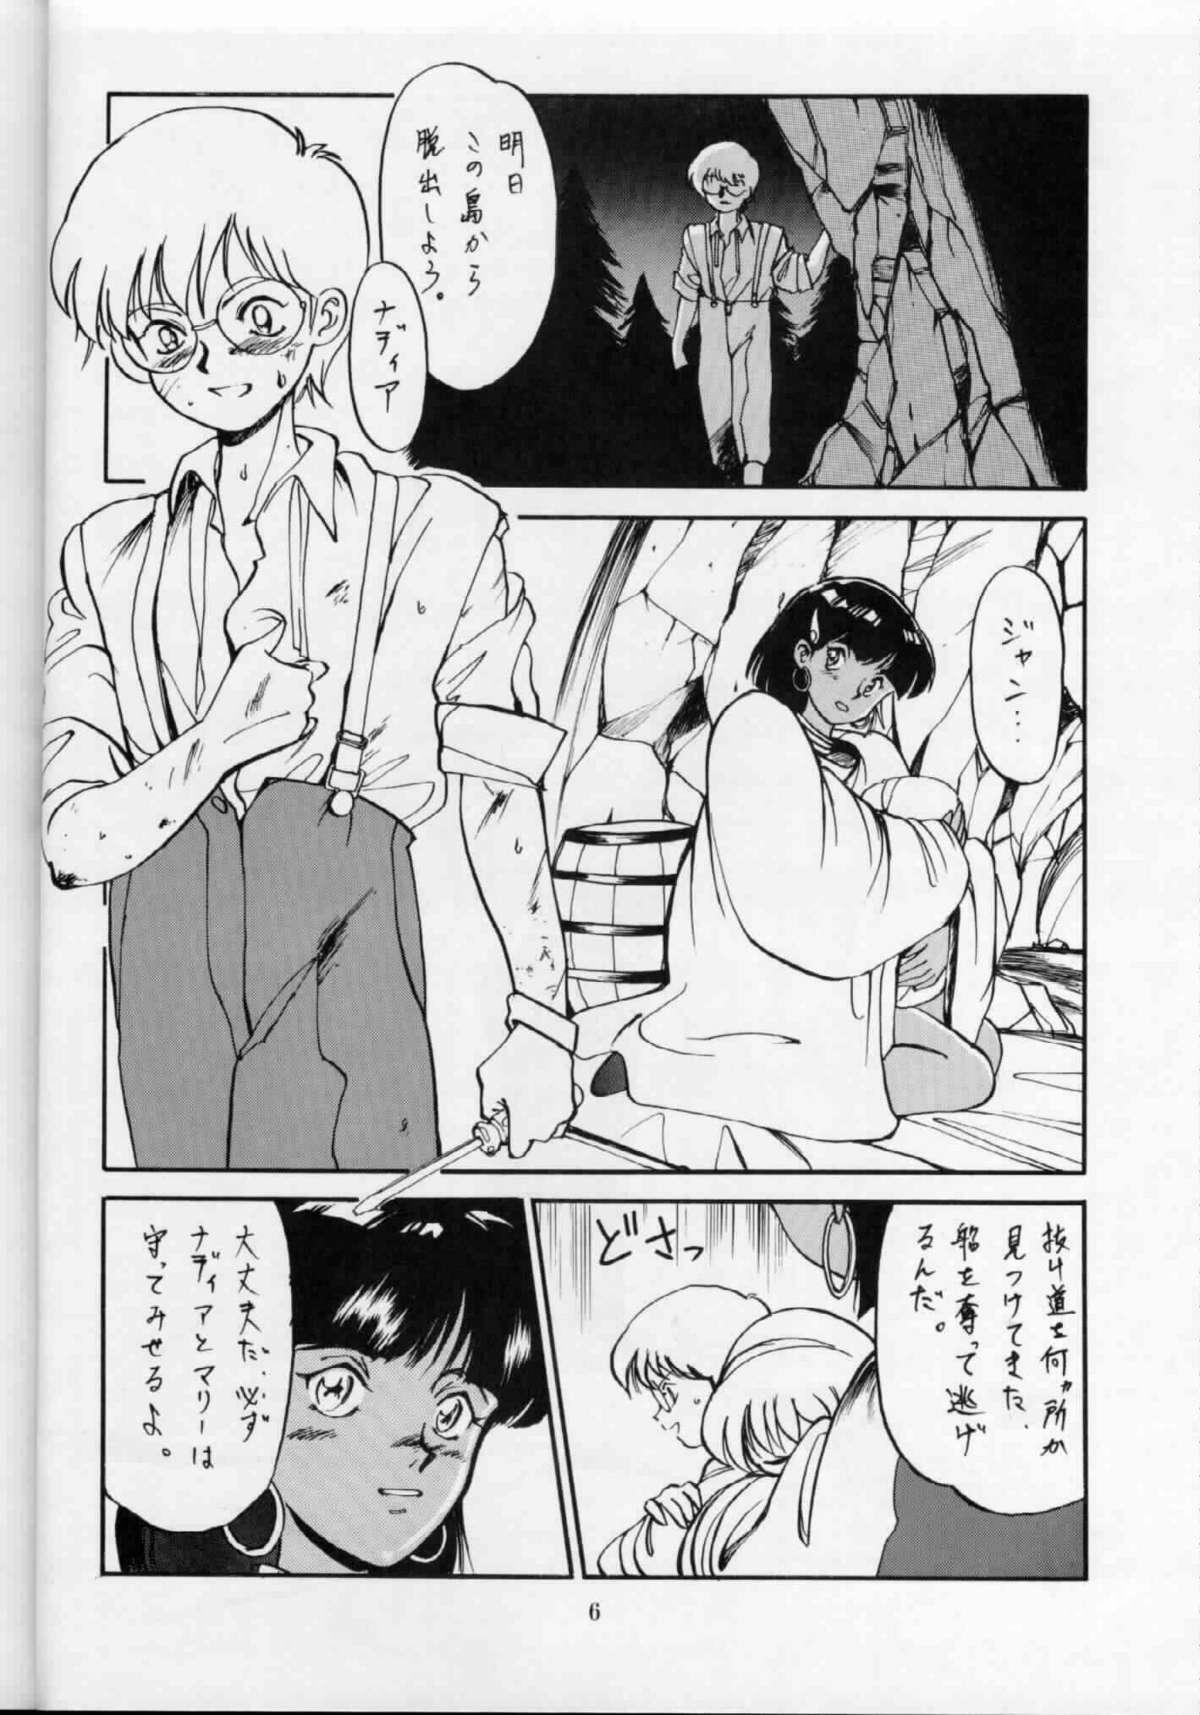 Blowjob 'T' no Wagamama 'F' no Yuutsu 2 - Fushigi no umi no nadia Girlfriends - Page 5